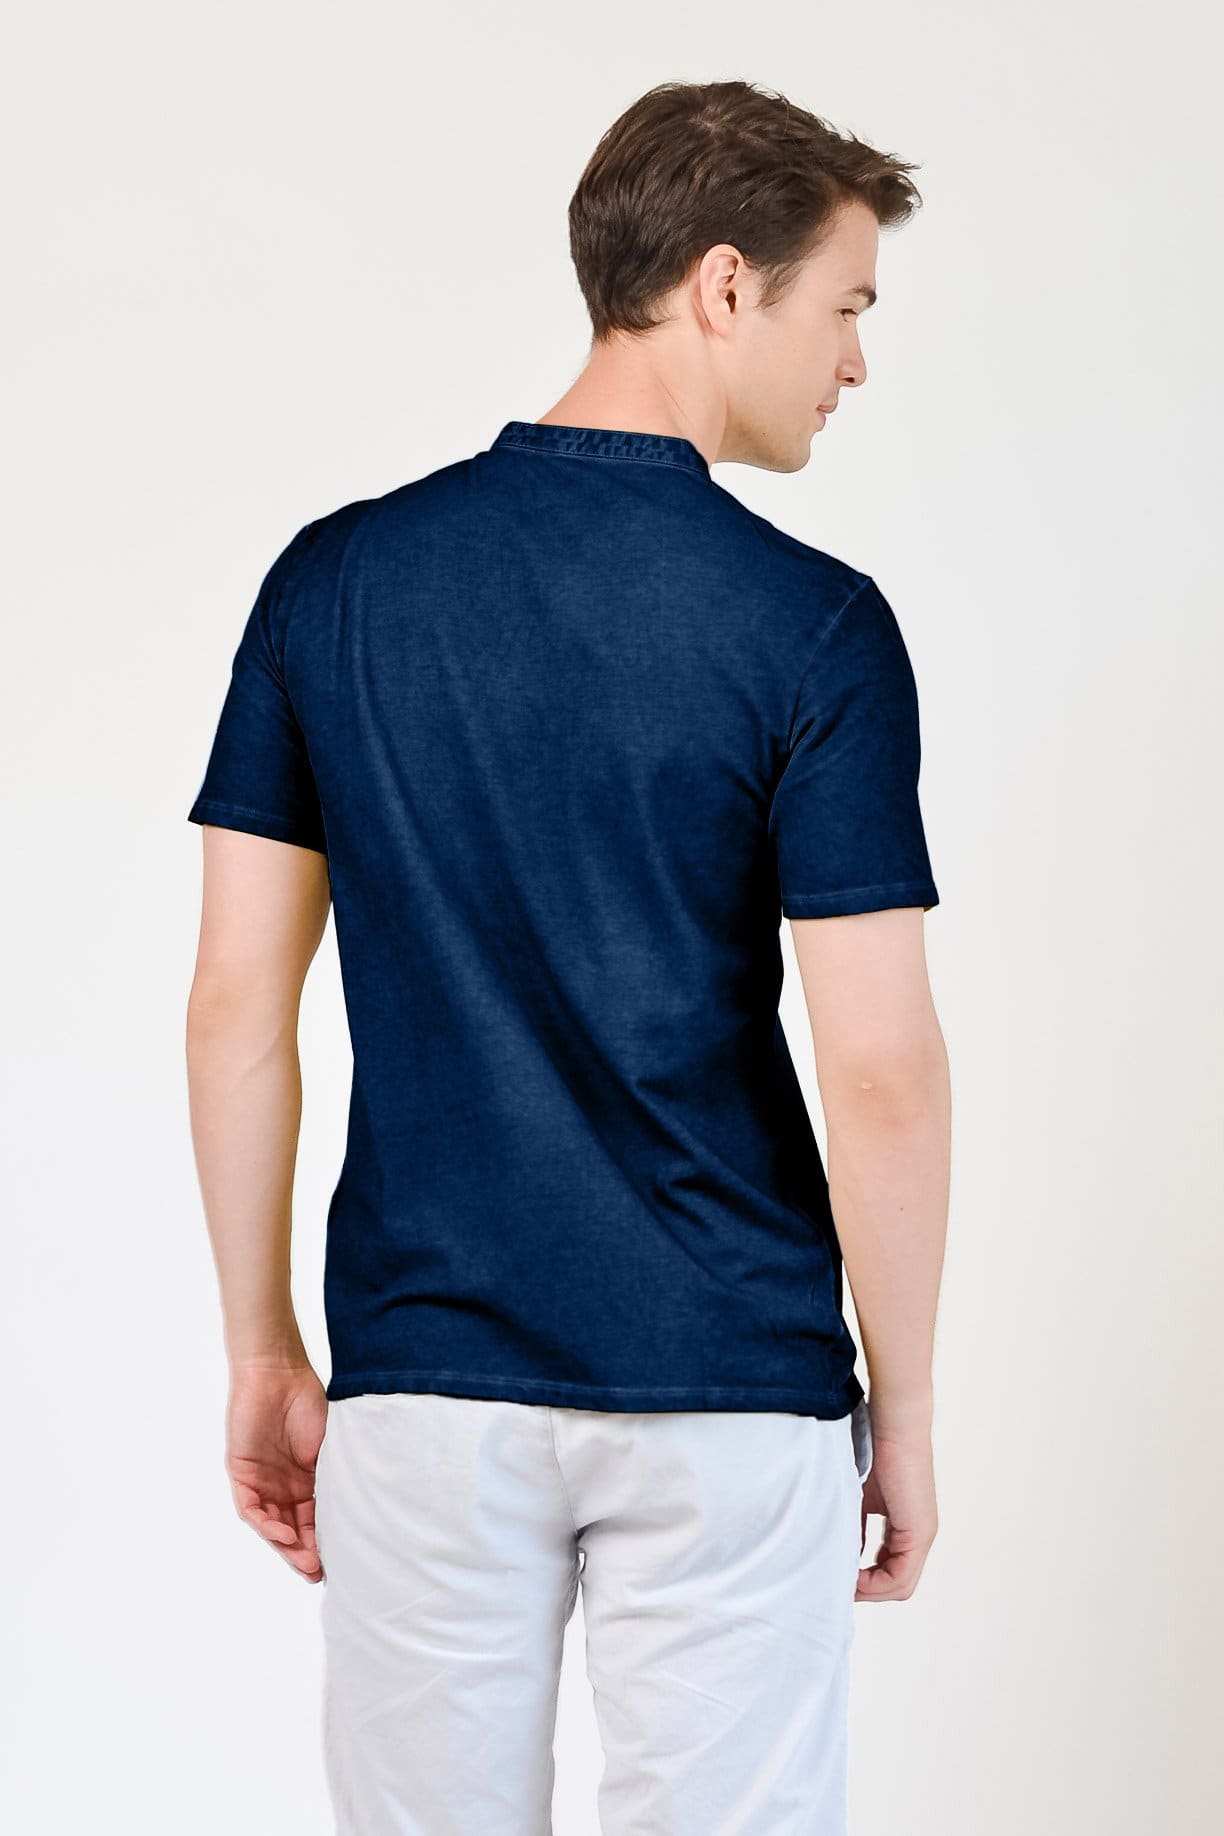 Pique Henley - Navy - T-Shirt